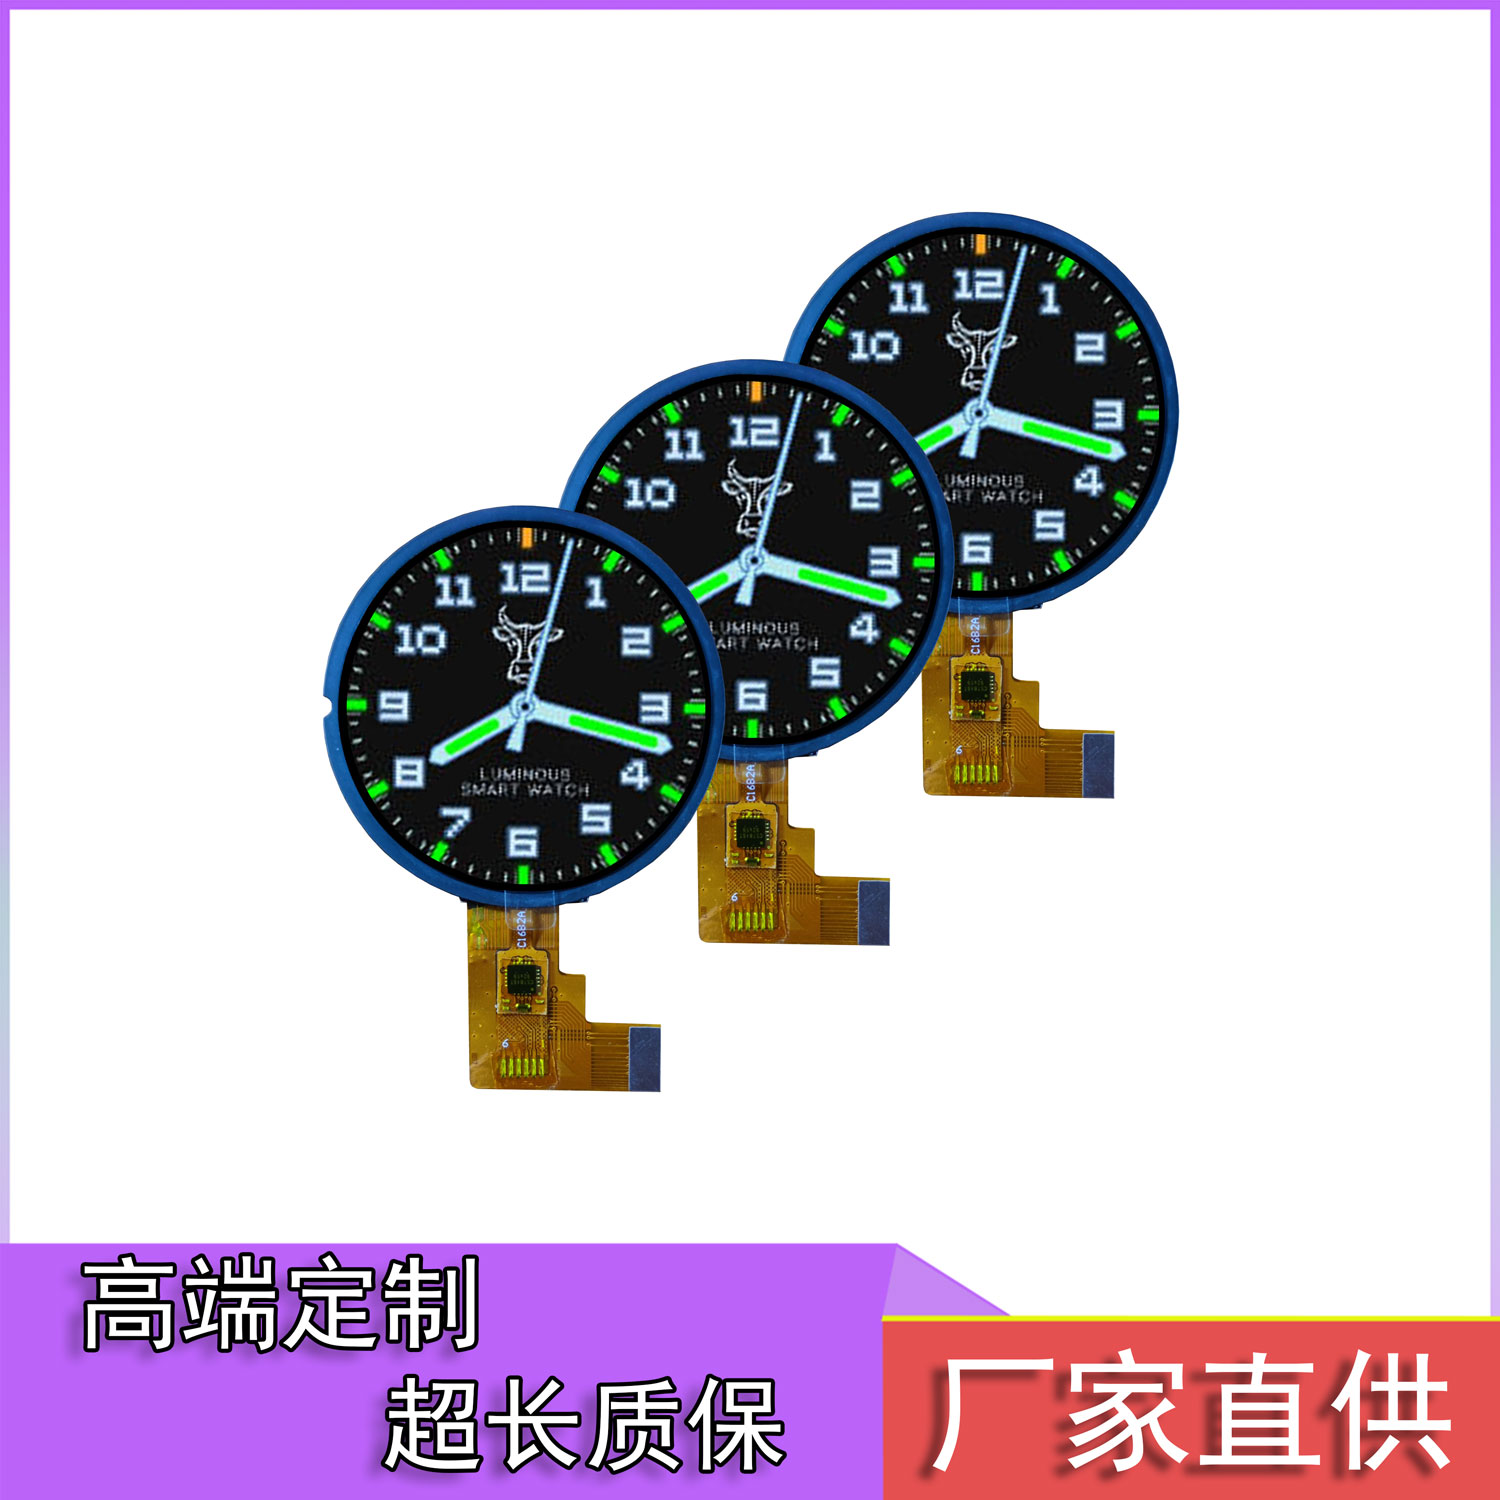 广东珠海广州1.28寸240240SPI圆形旋钮开关屏智能手表小家电智能家居HMI机器人